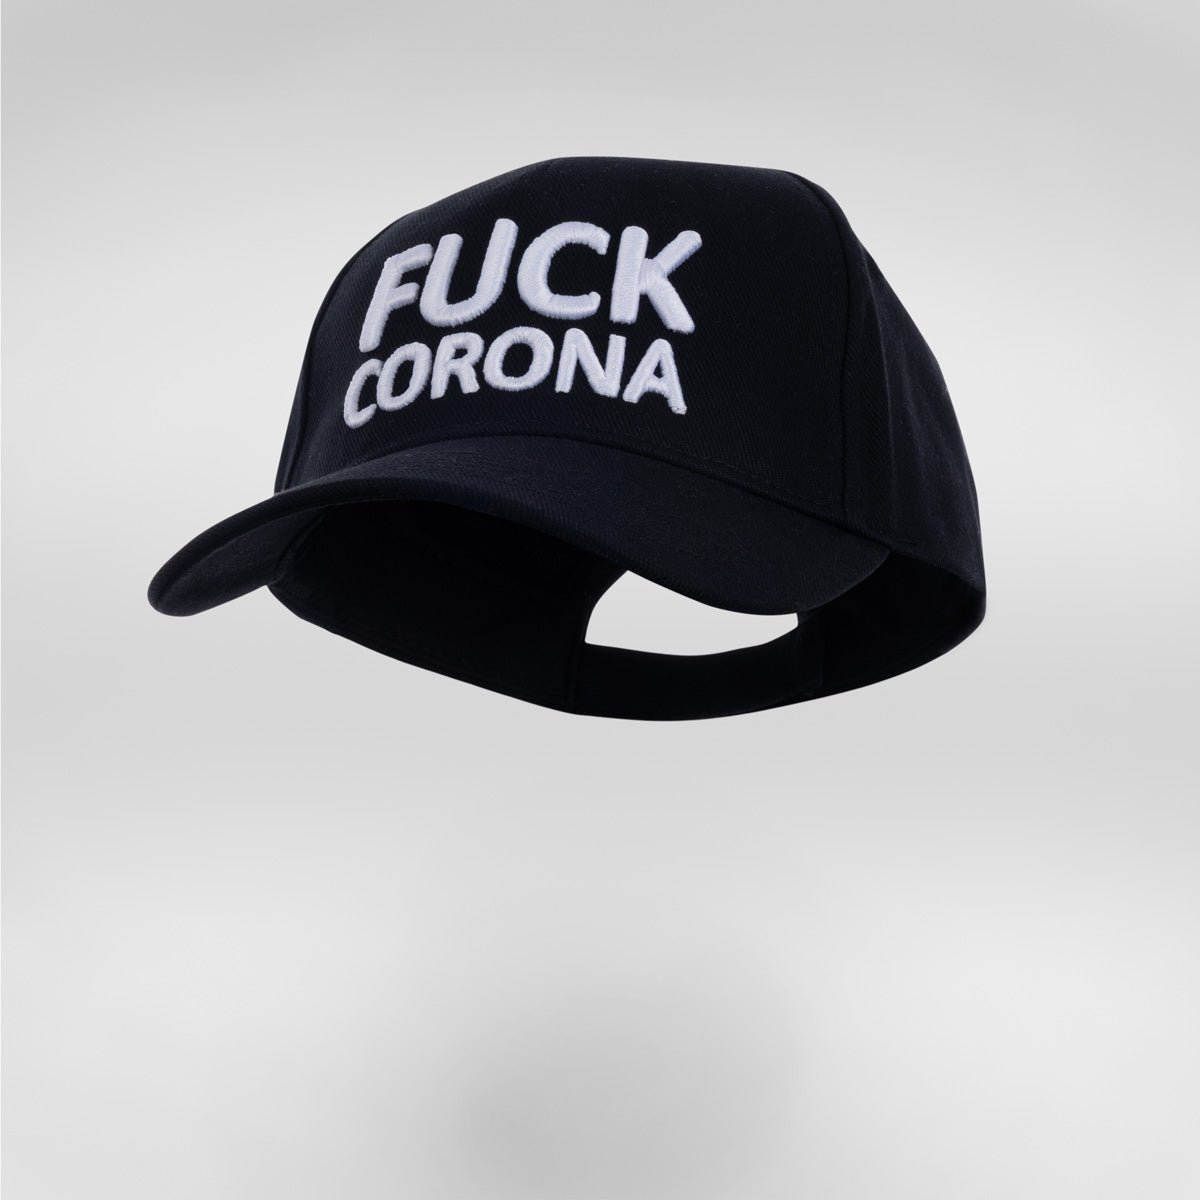 Kappe "Fuck Corona" schwarz-weiß